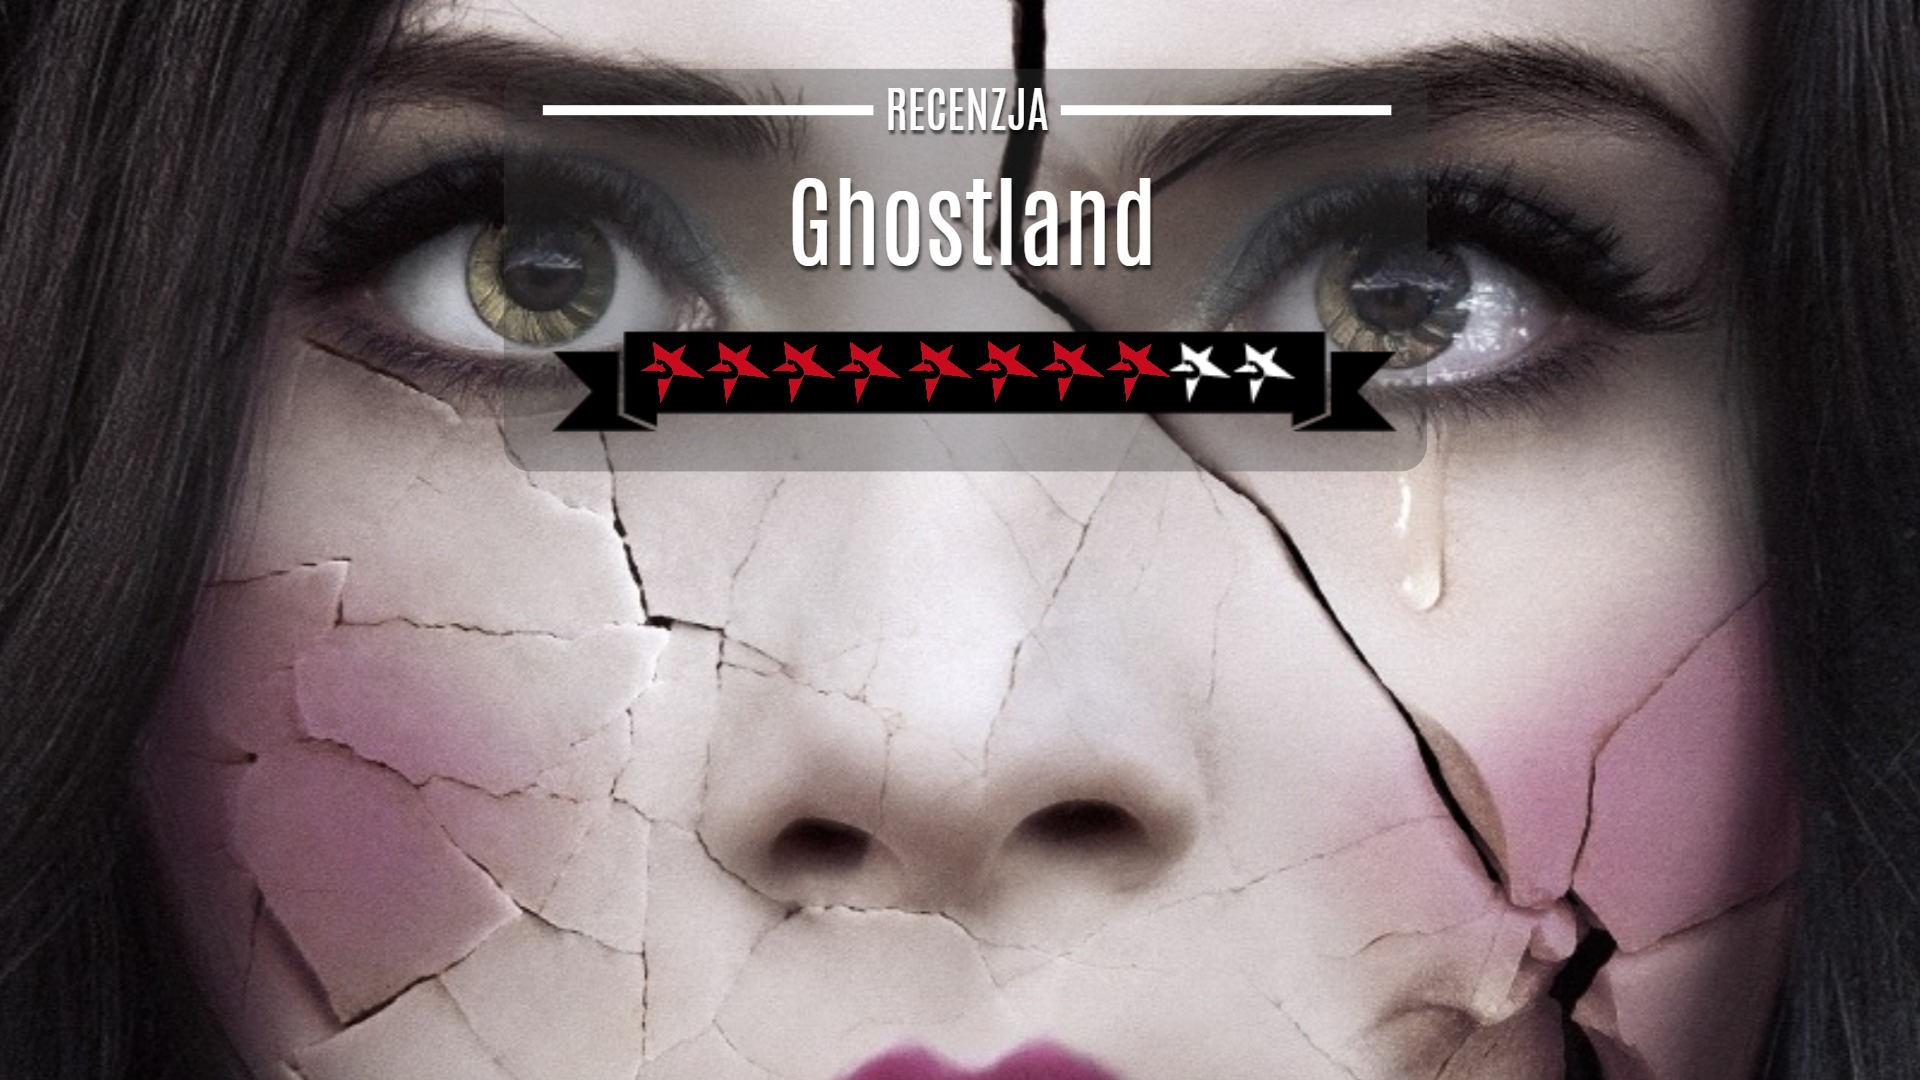 Ghostland recenzja ghostland opinie ghostland film ghostland horror ghostland 2018